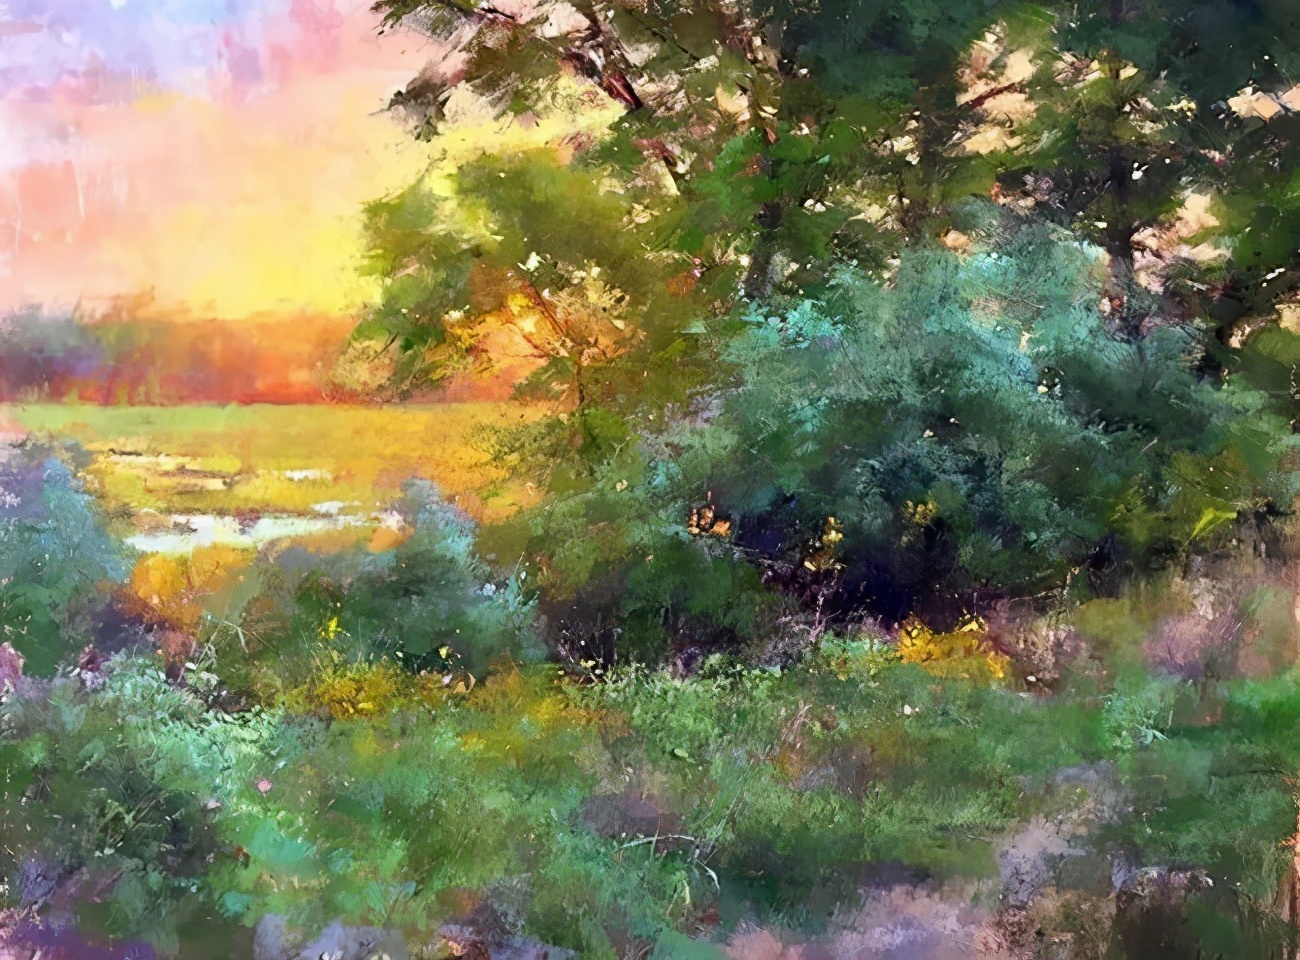 美国艺术家阿奎尔 柔和的风景油画,温馨美好!